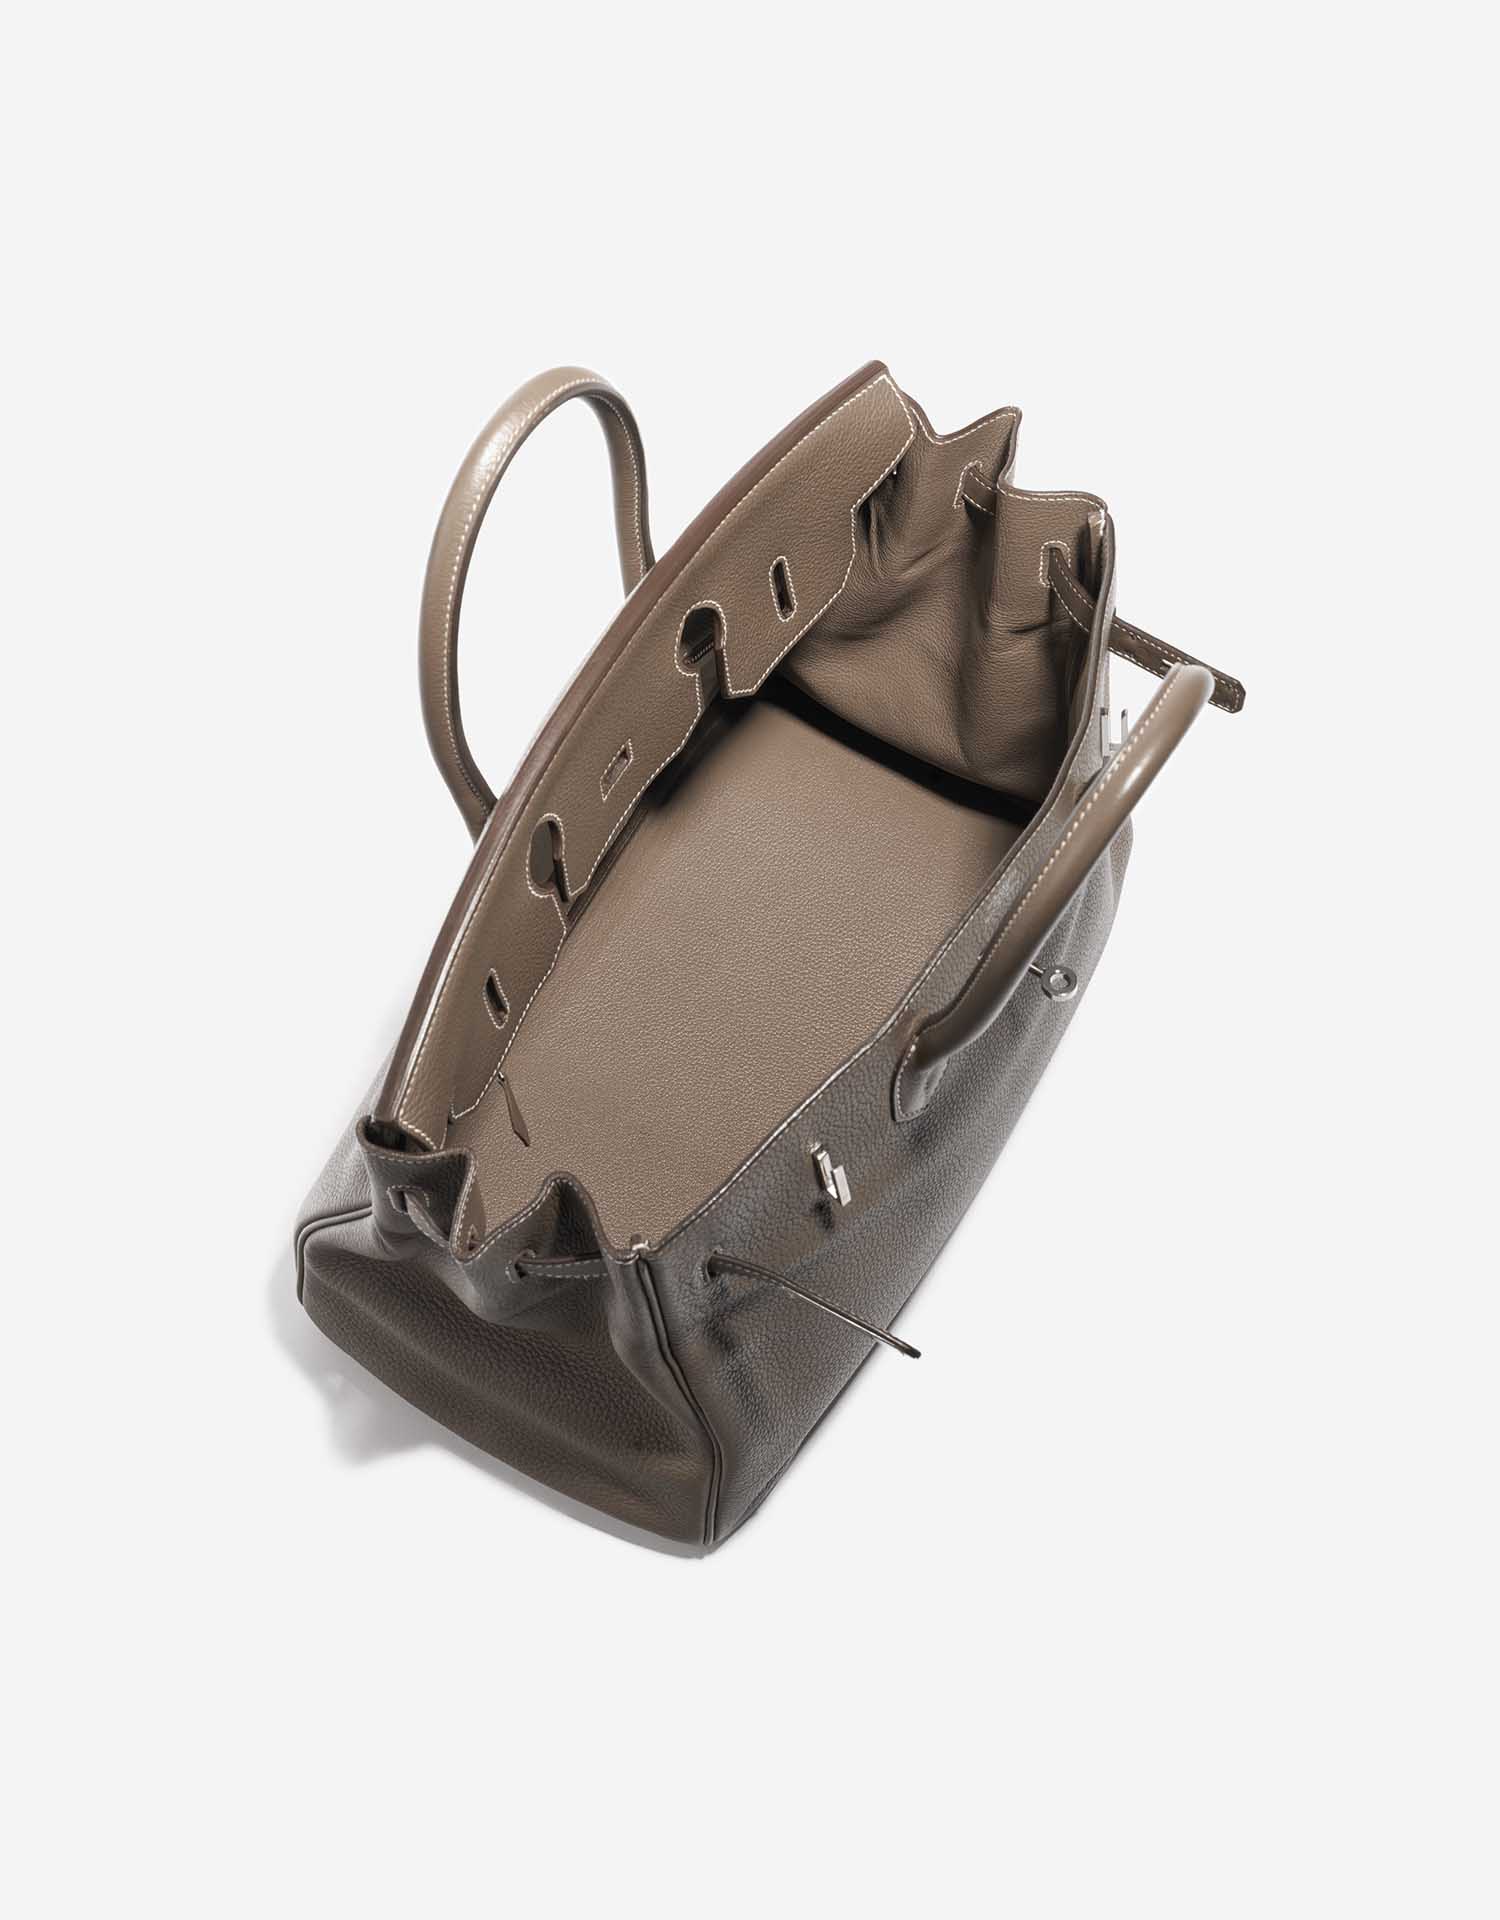 Hermes Togo Leather 35 Centimeter Birkin Bag Black with Palladium Hardware  - Luxury In Reach